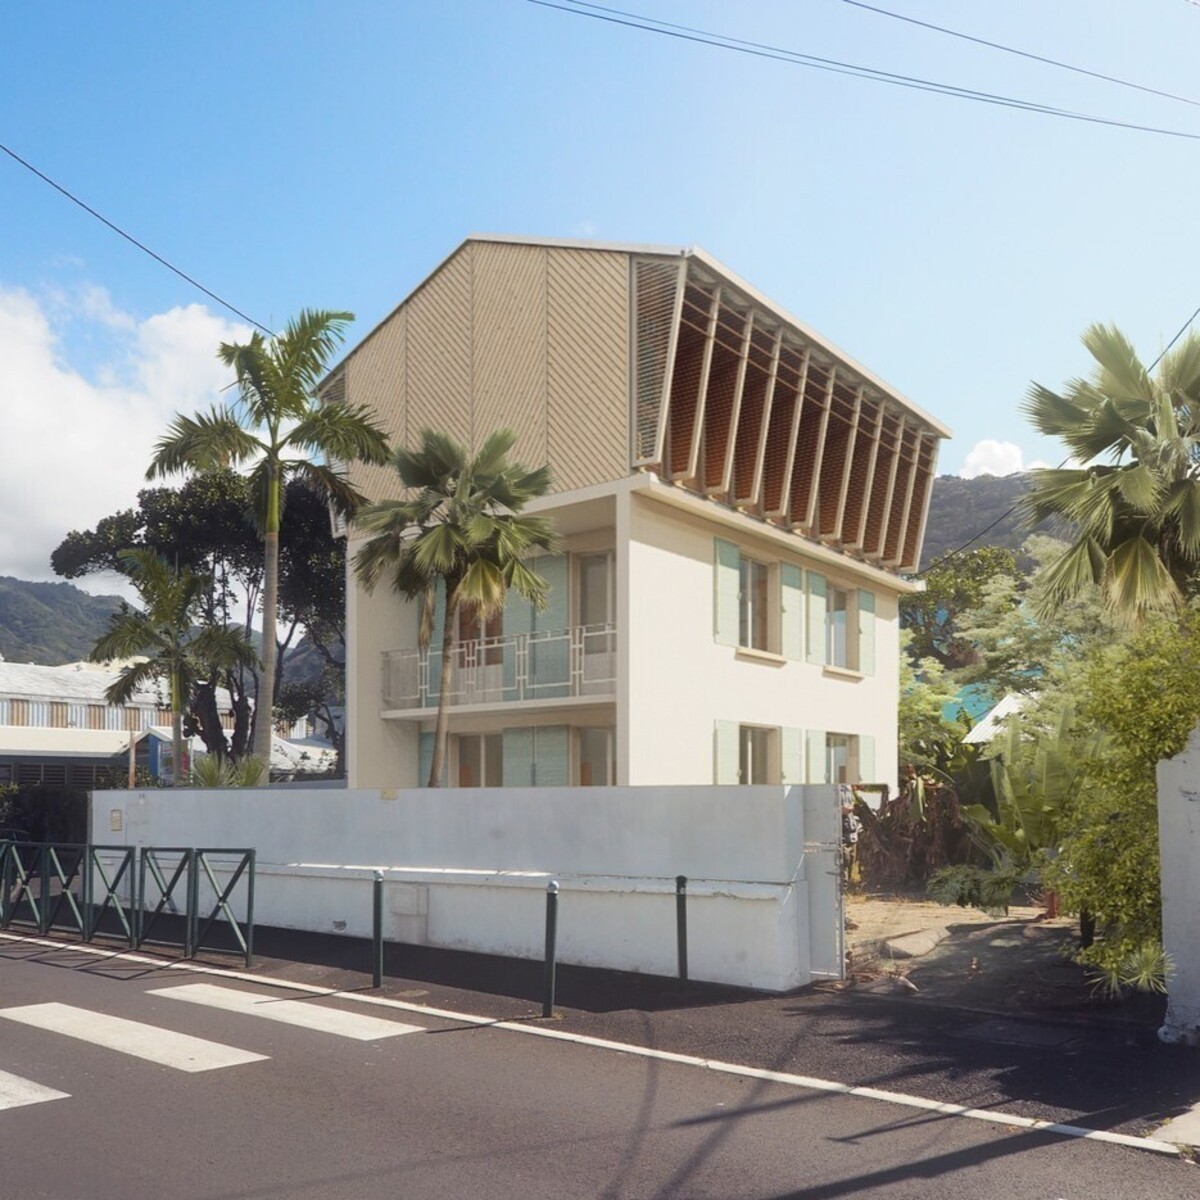 Siège de l'Ordre des architectes de La Réunion / Mayotte, par Co-Architectes et S2R Vinci